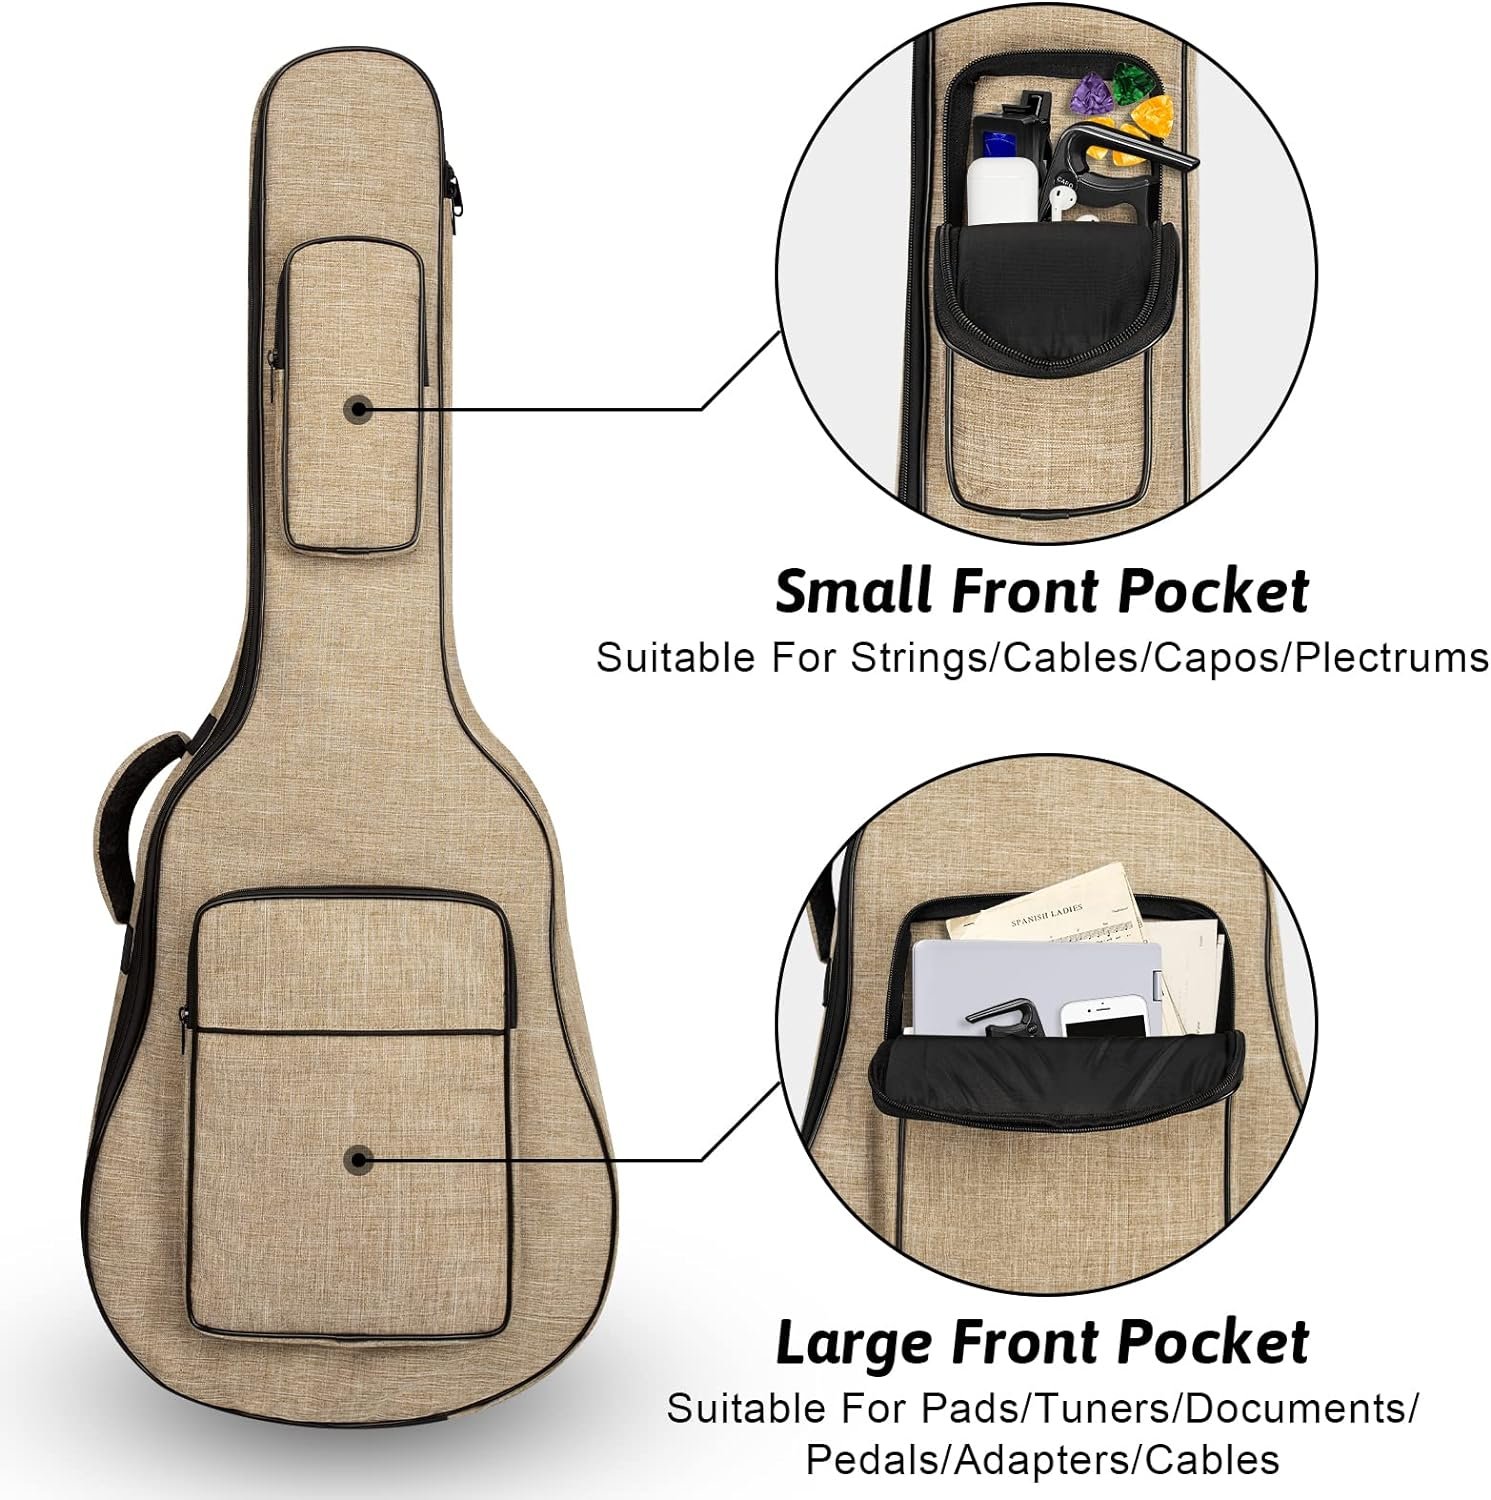 Acoustic Guitar Bag Review